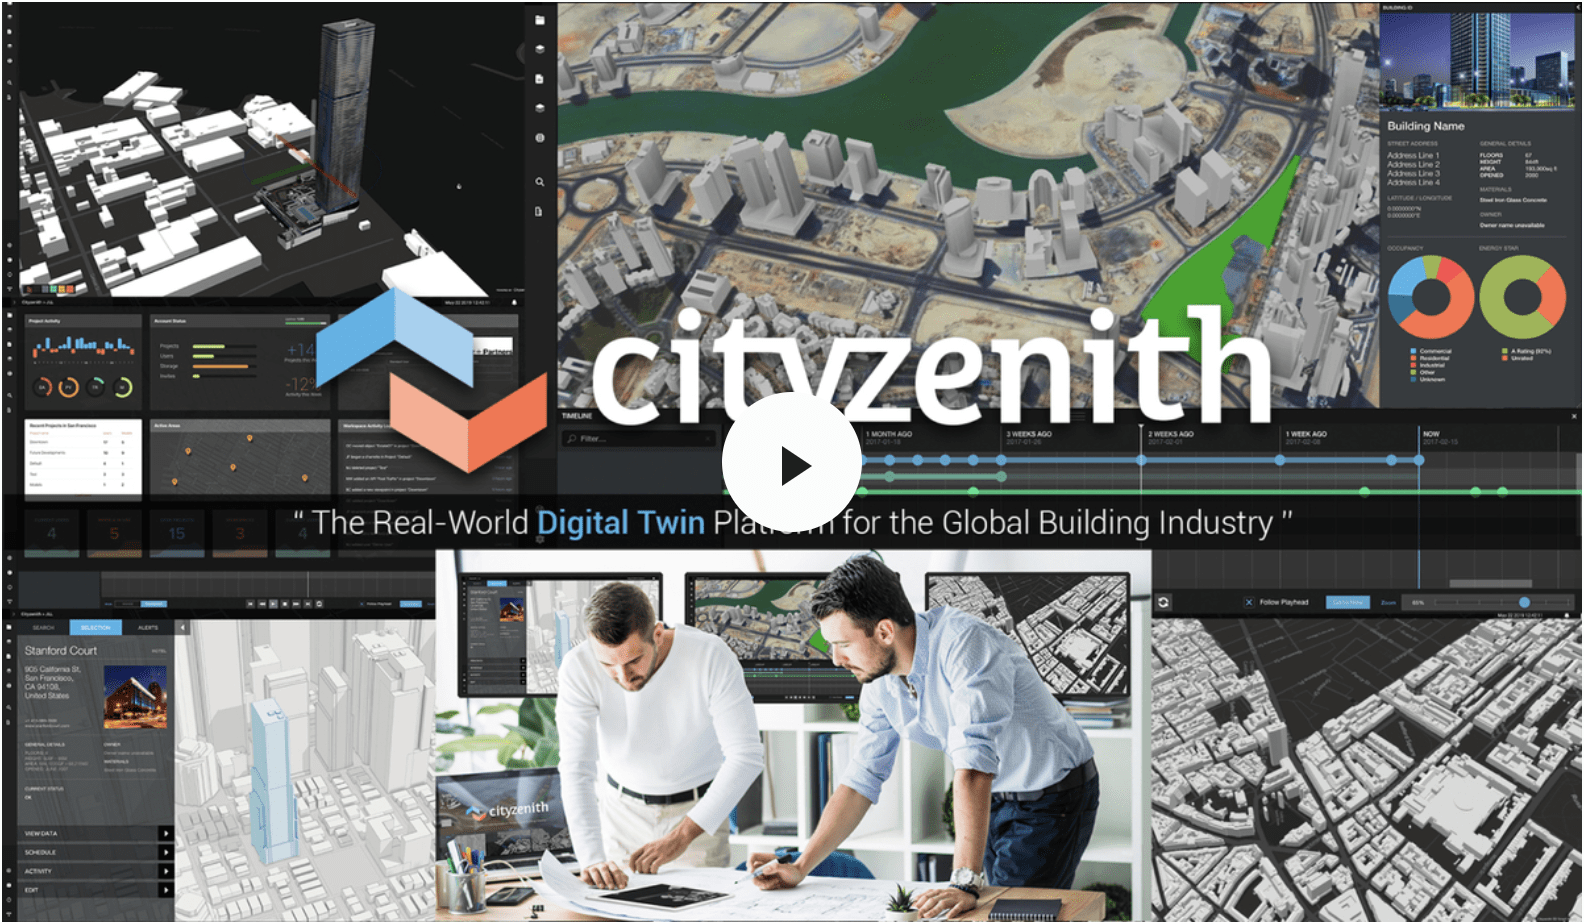 Cityzenith (August 2020)